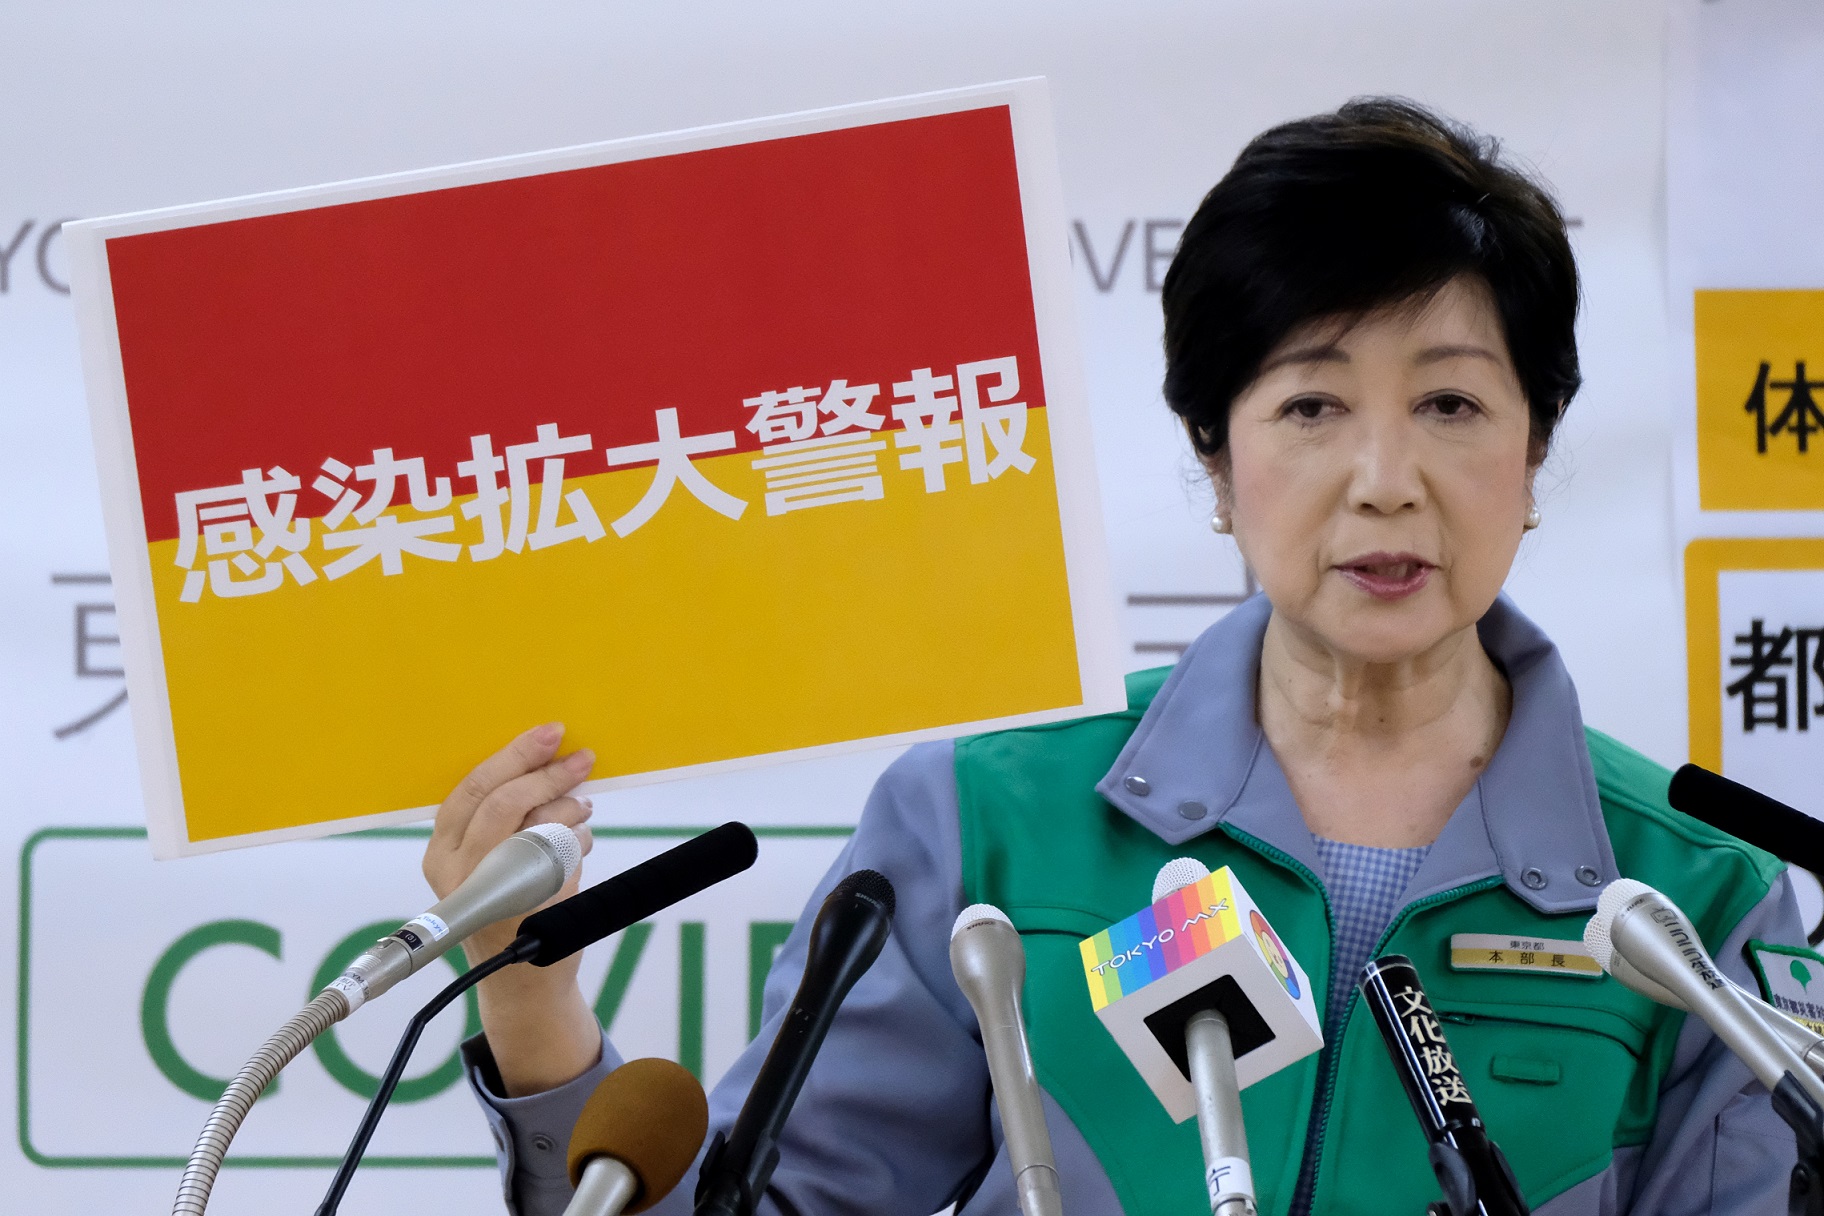  (Governadora de Tquio, Yuriko Koike, segura uma placa que sinaliza "alerta de propagao de infeco". Foto: Kazuhiro NOGI / AFP)